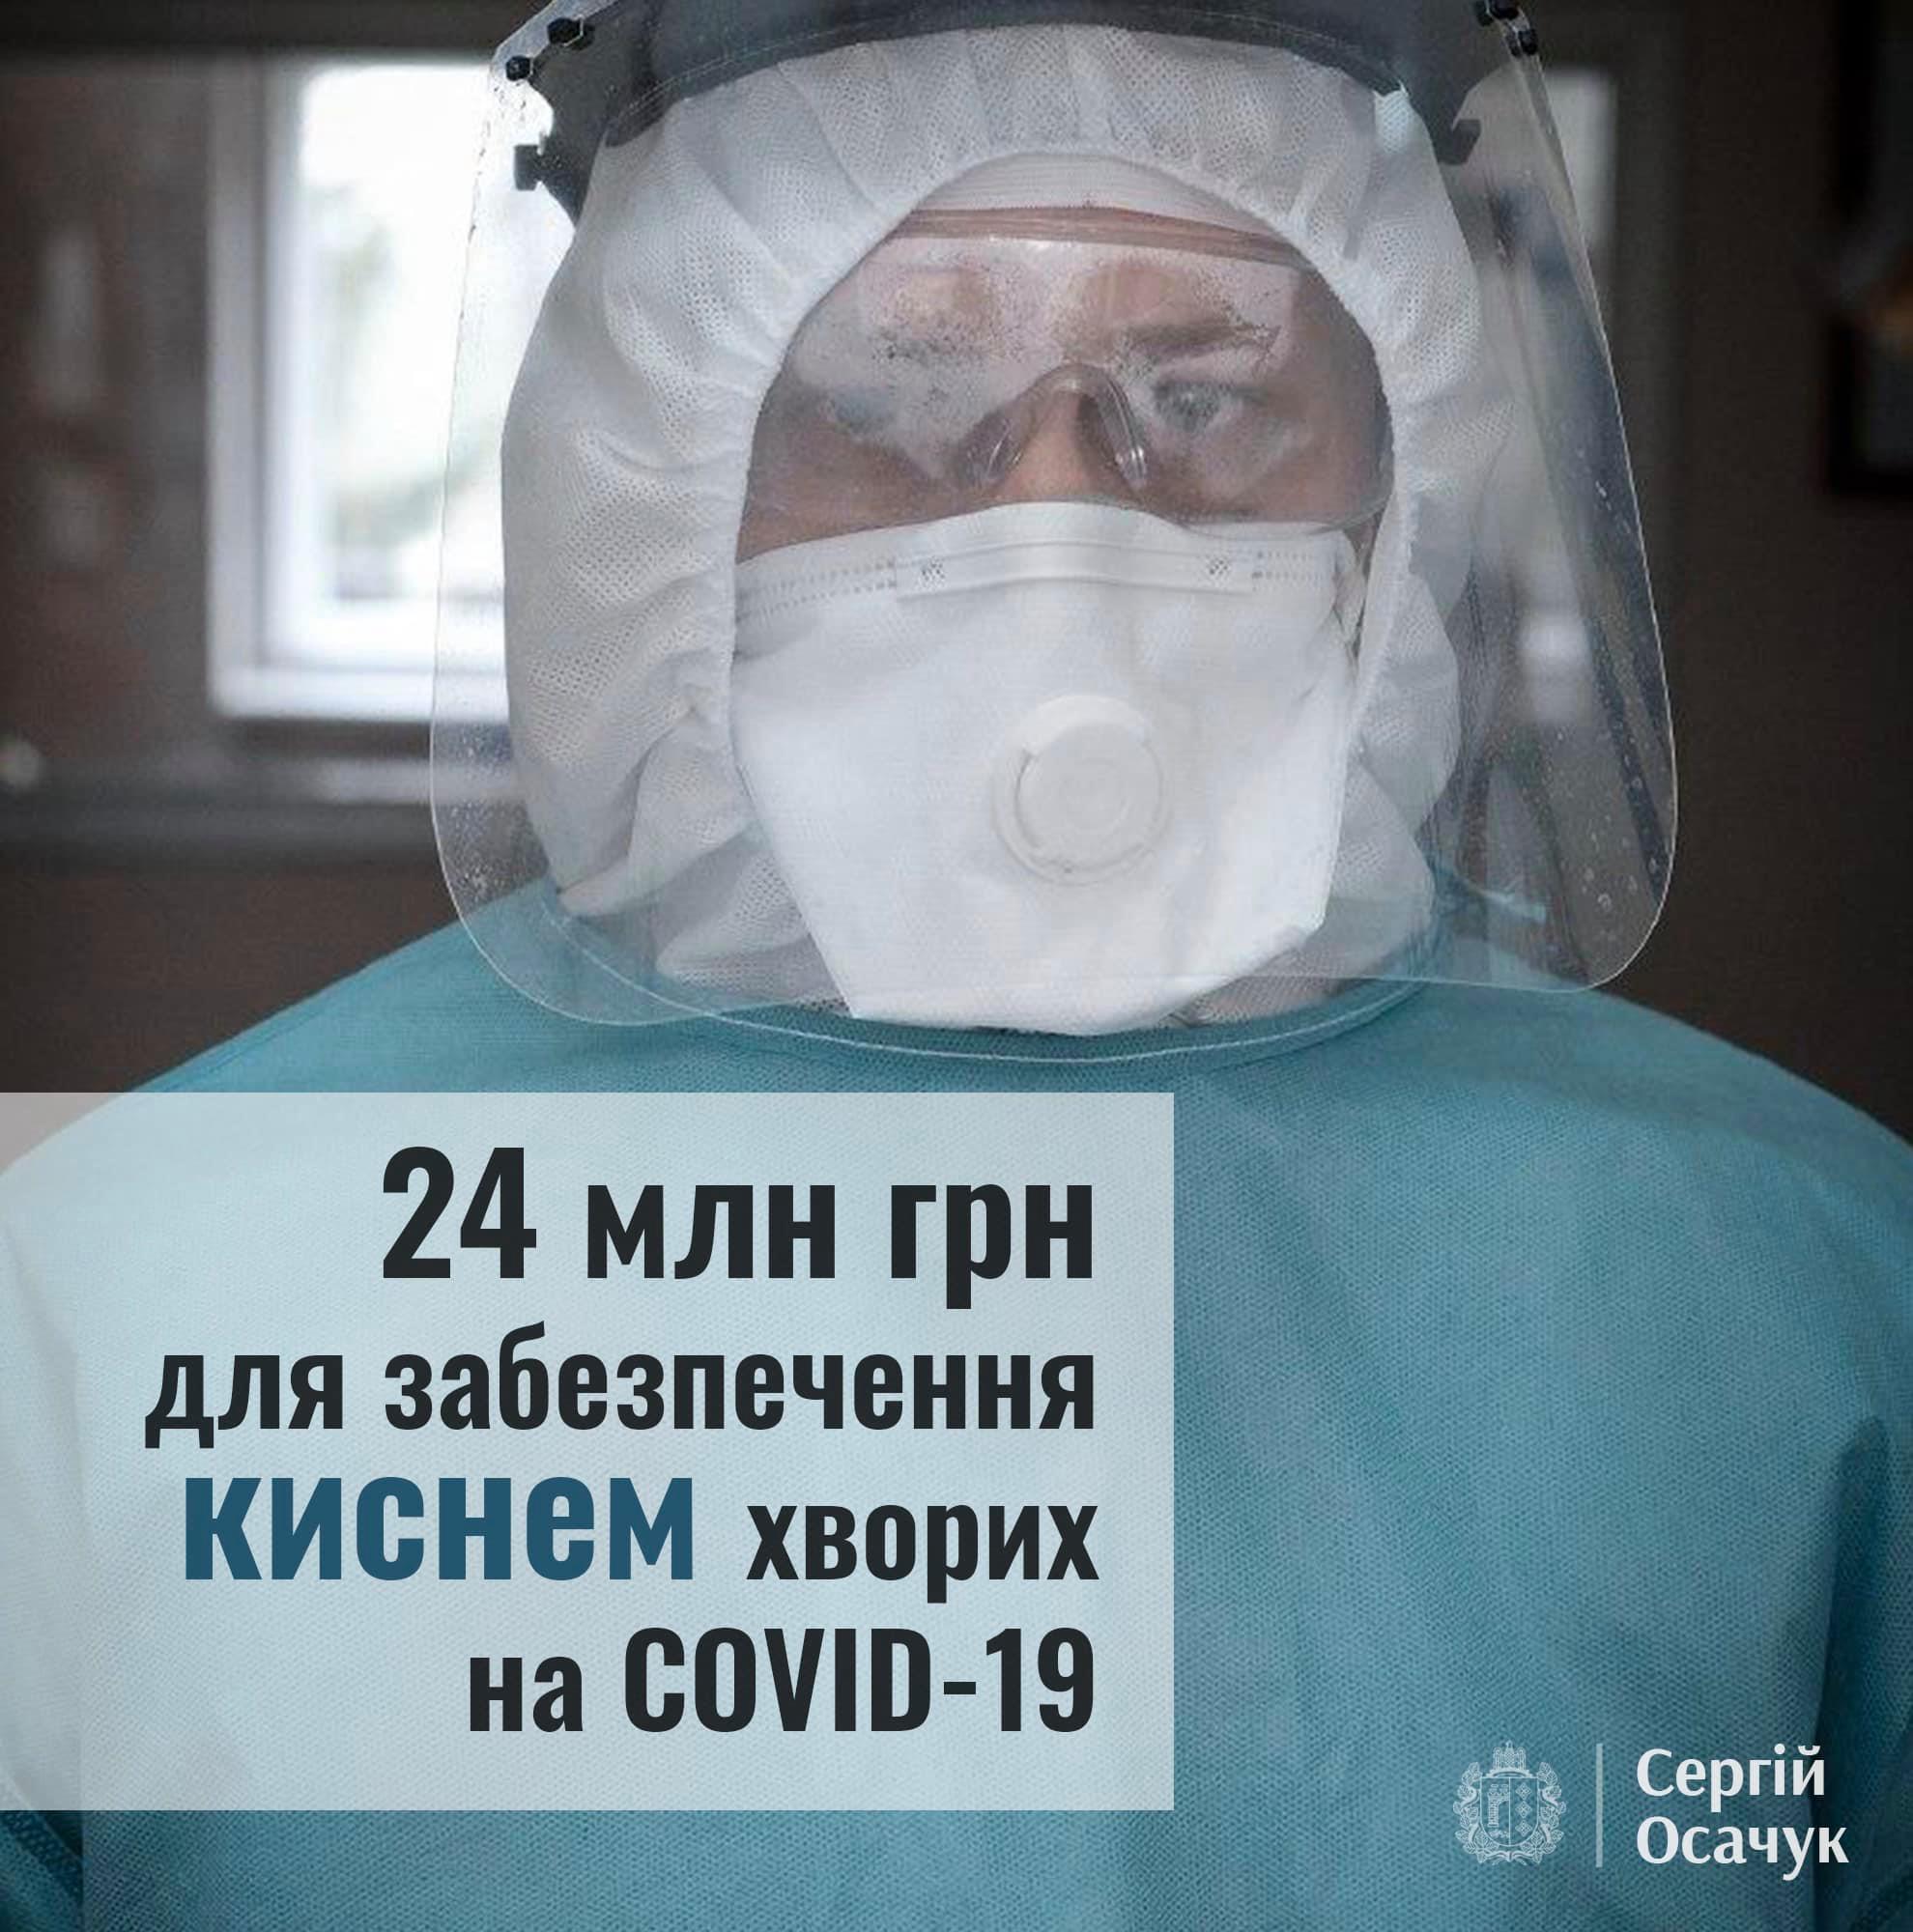 Осачук домігся від Уряду виділення 24 мільйонів гривень для забезпечення киснем пацієнтів в усіх лікарнях Буковини 